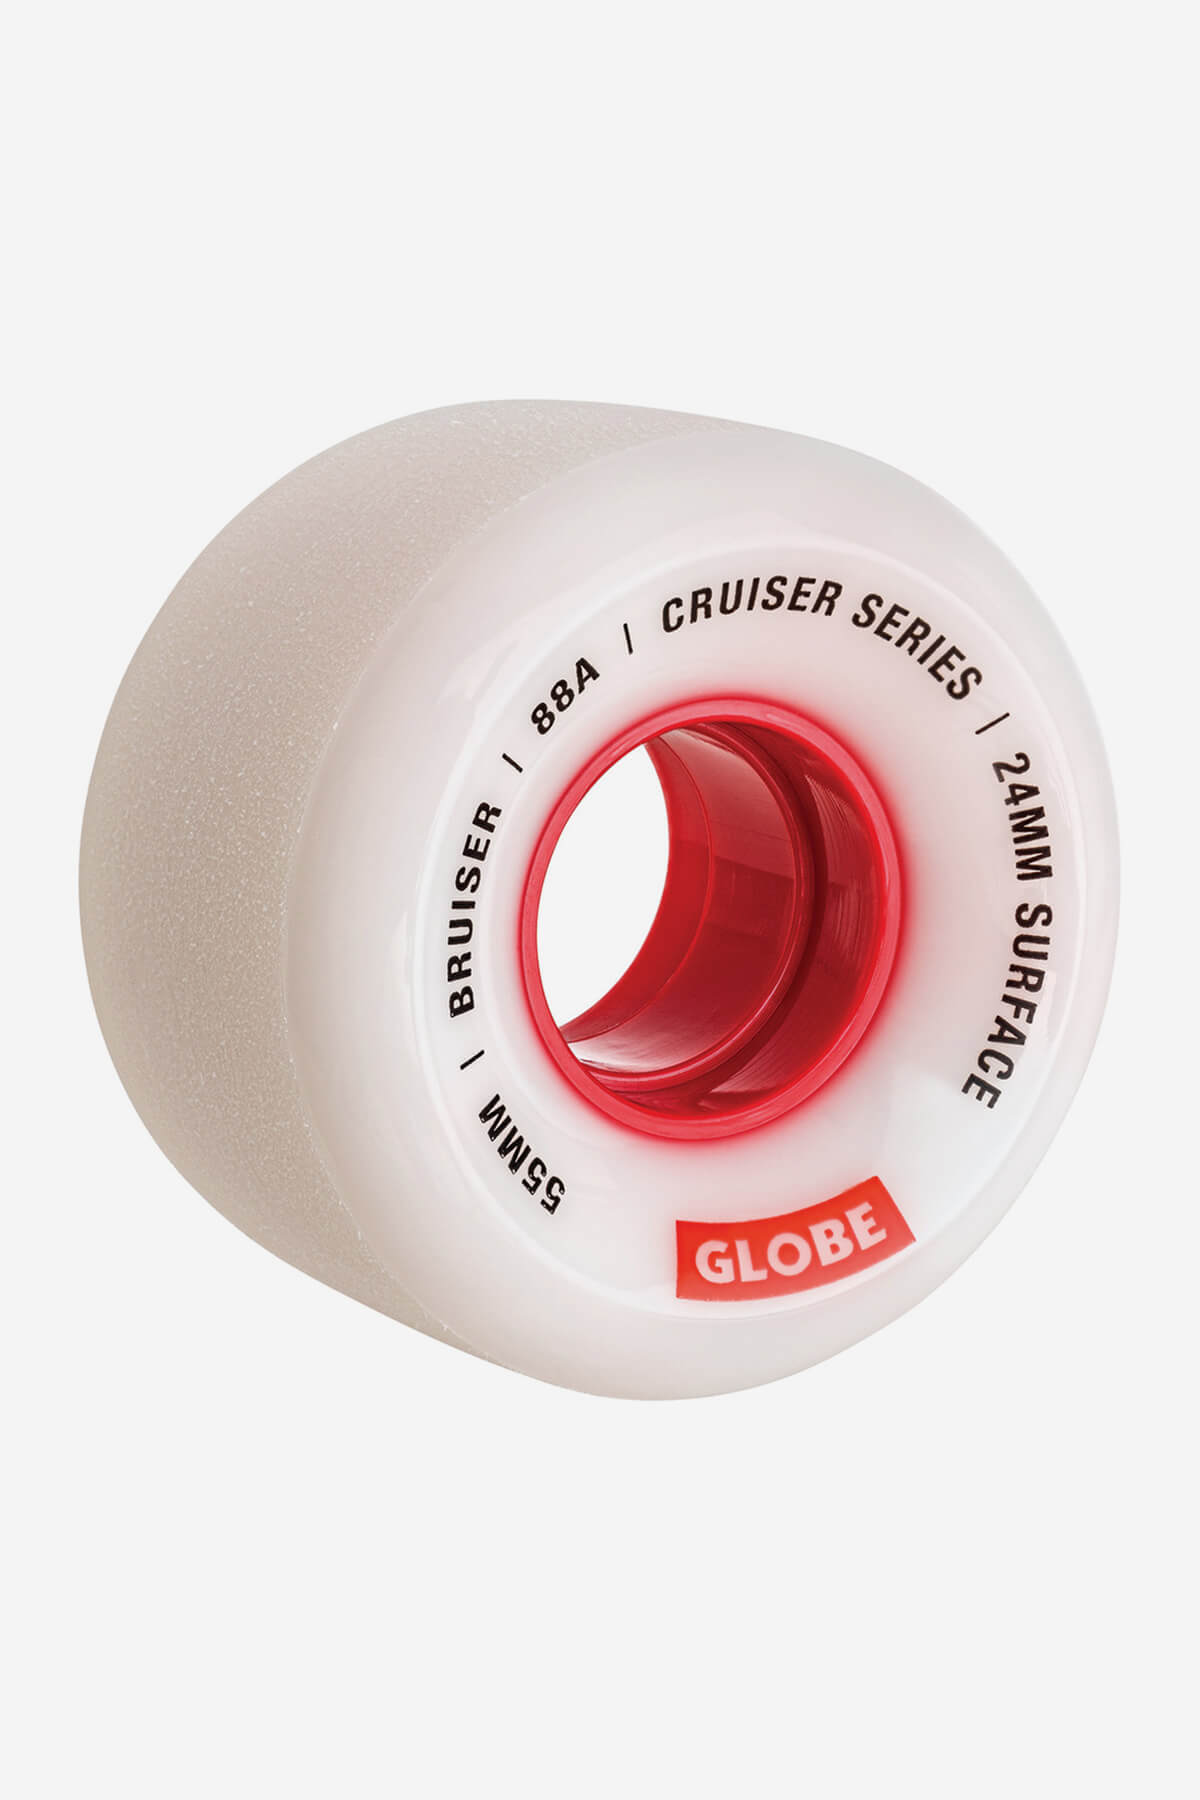 Globe Wheels Bruiser Cruiser Skateboard Wheel 55mm in White/Red/55